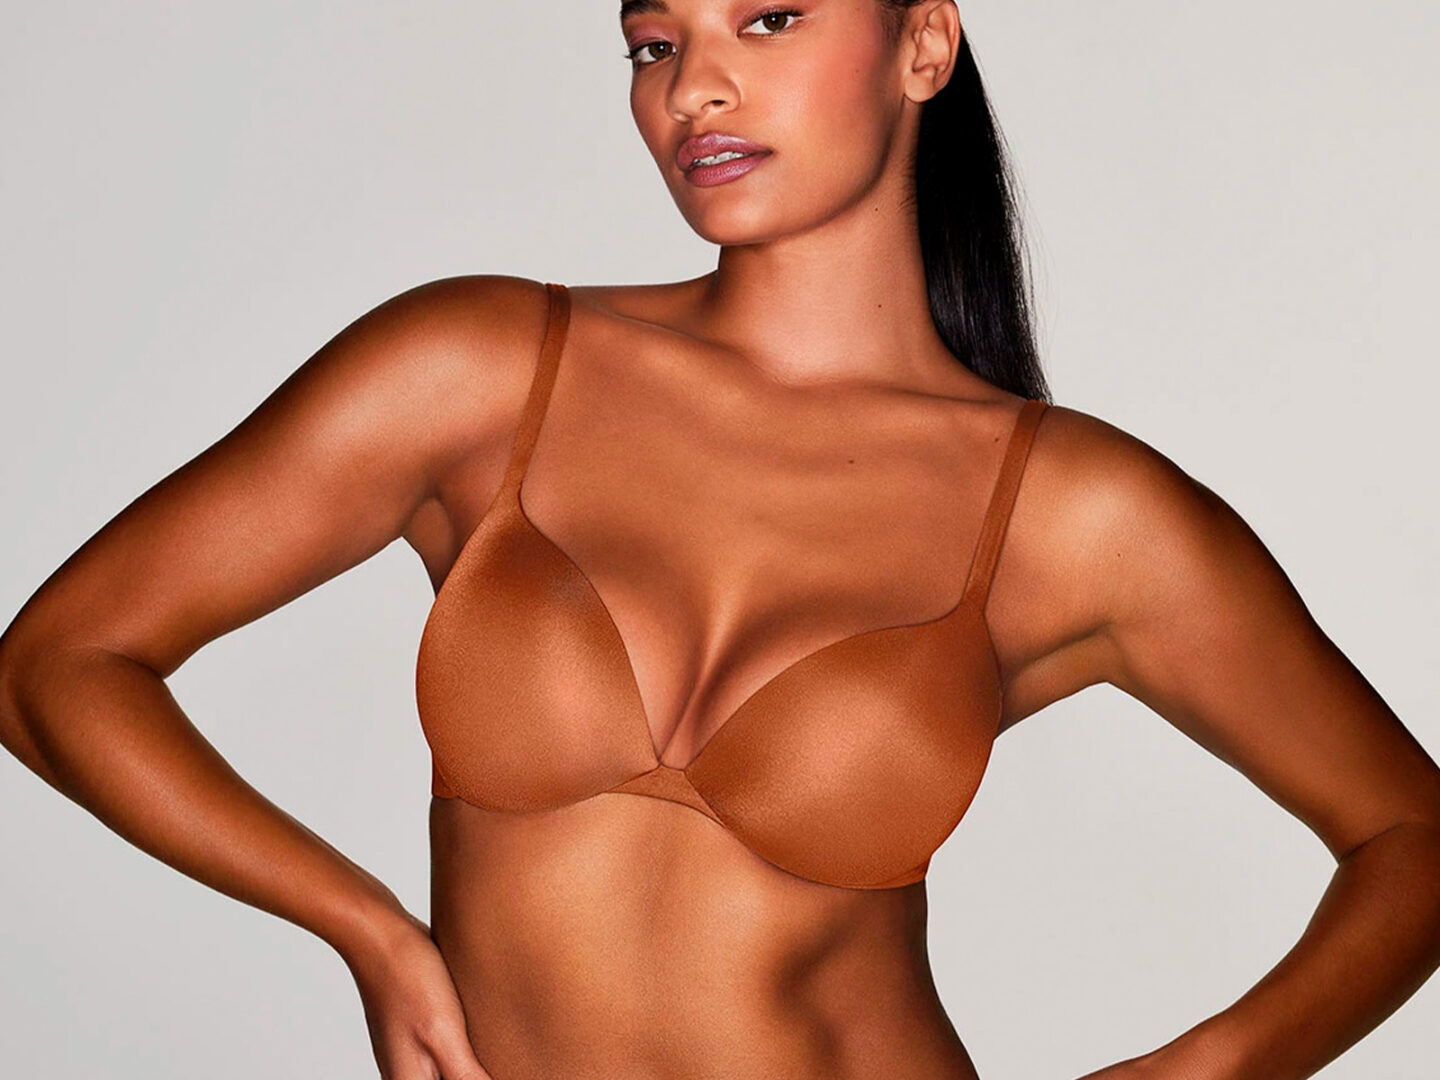 SKIMS de Kim Kardashian lanza su «No boob job bra» 